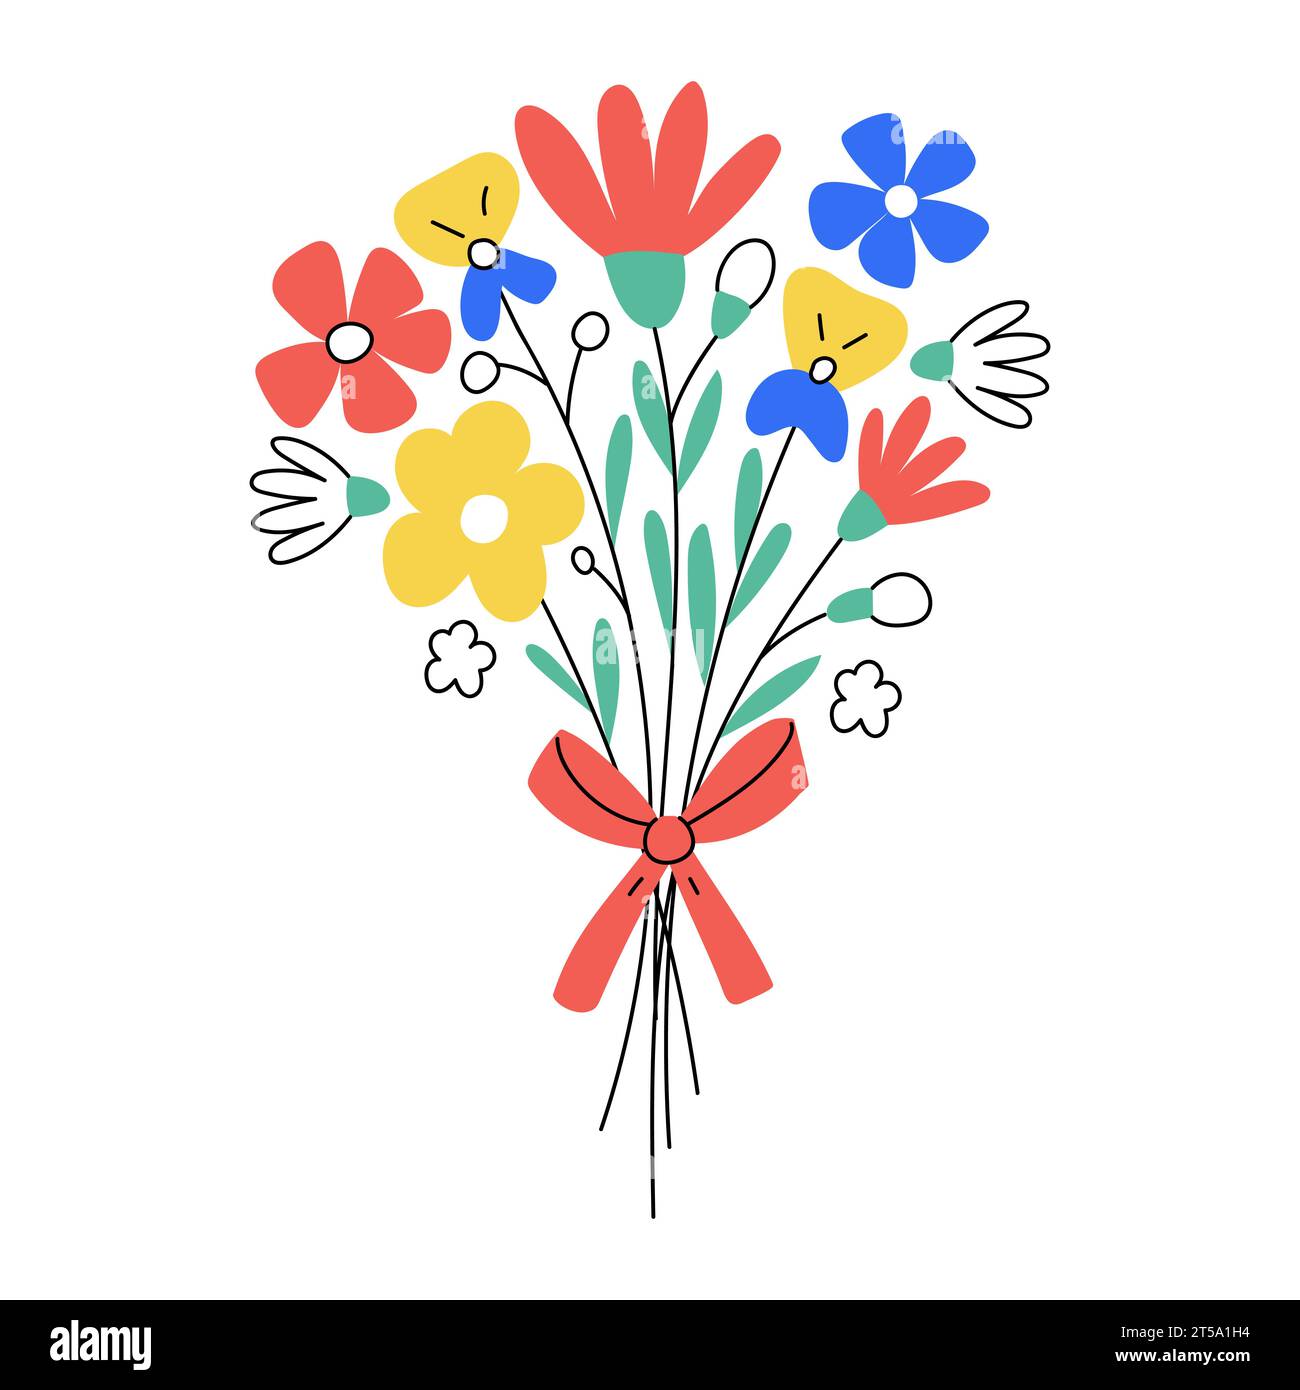 Mazzo di fiori disegnato a mano. Elemento botanico semplice. Illustrazione vettoriale piatta a colori isolata su sfondo bianco Illustrazione Vettoriale